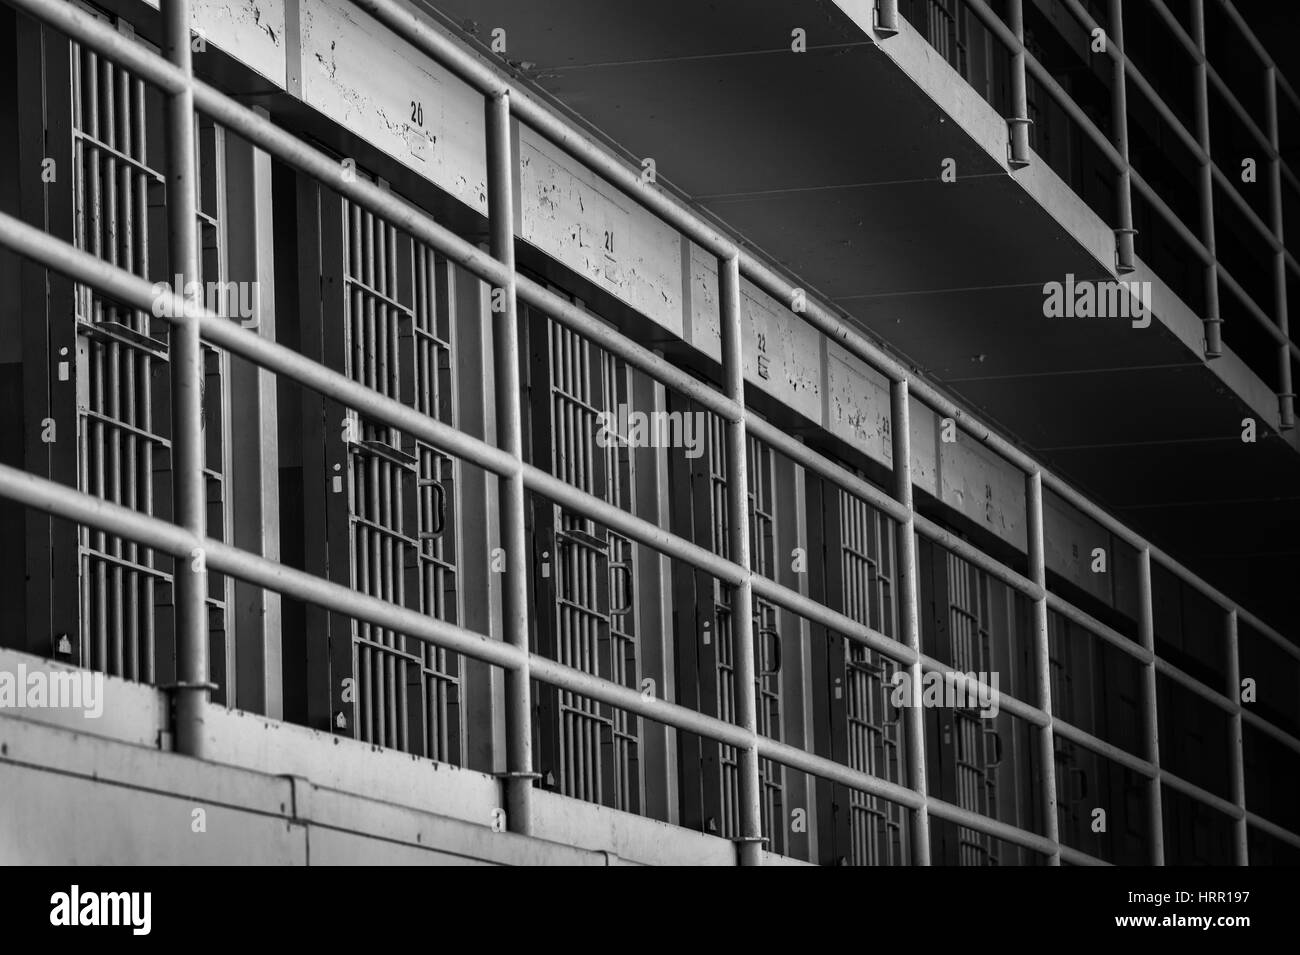 Alcatraz prison free